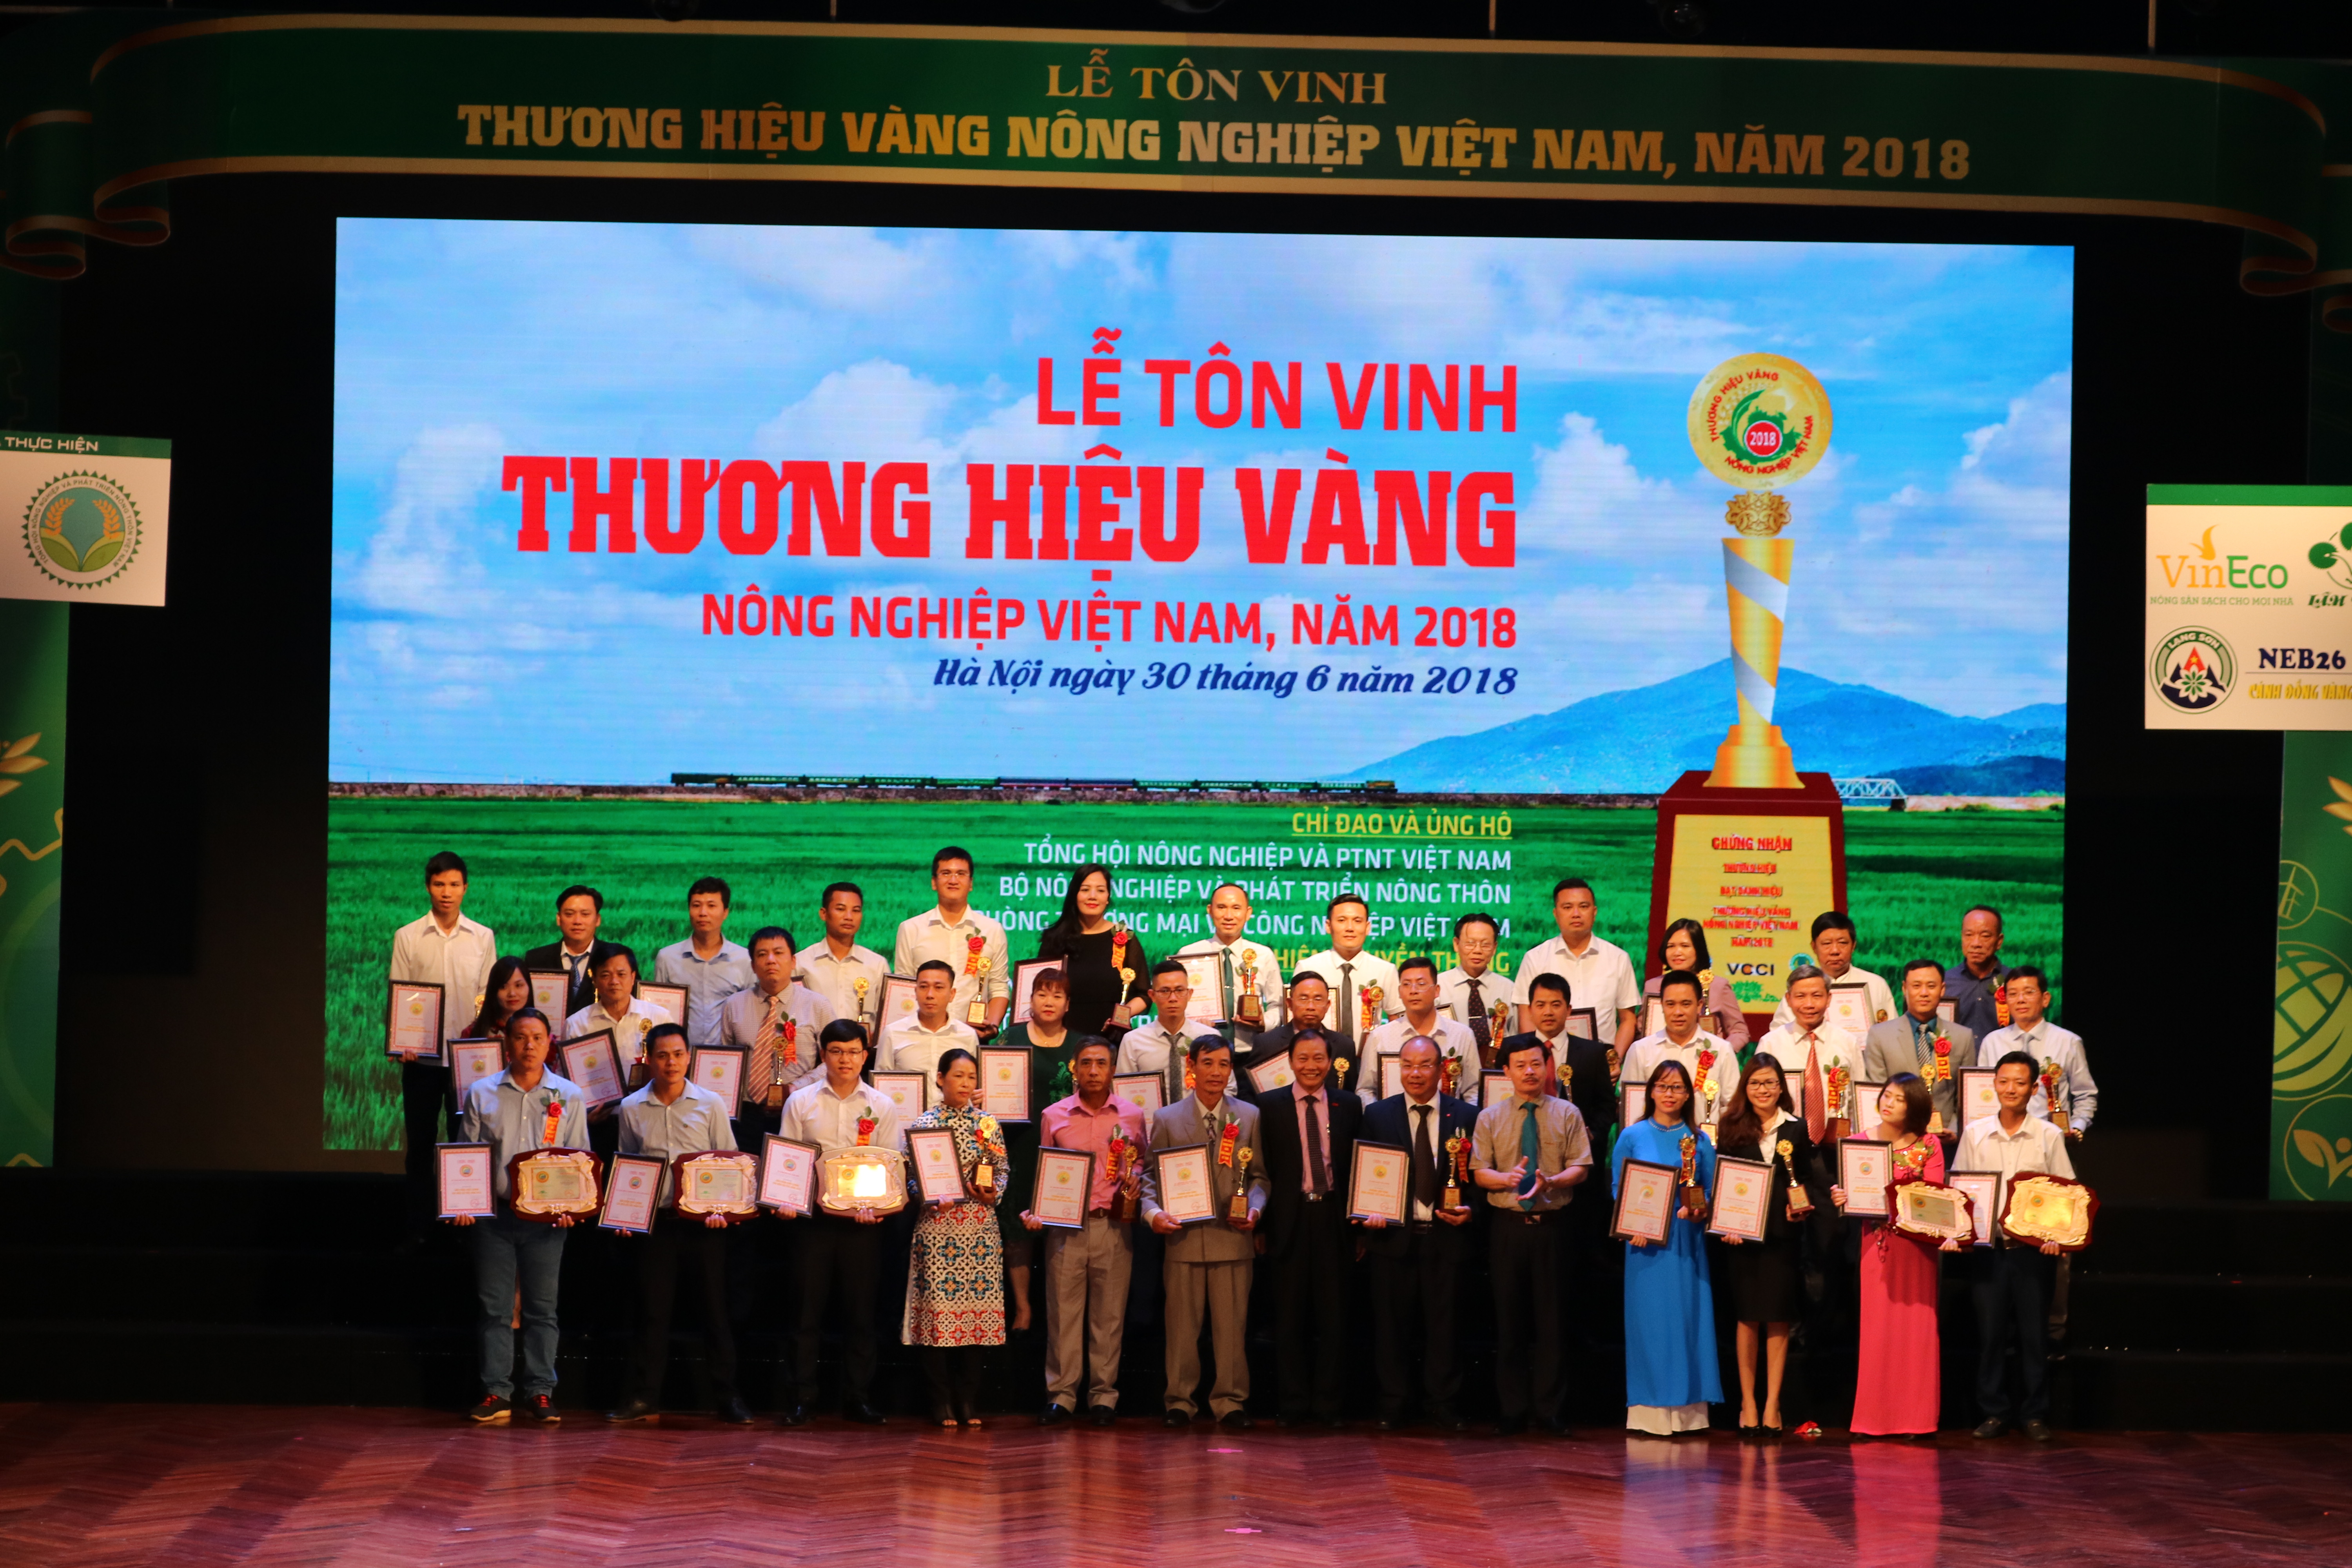 Sông Gianh - Thương hiệu vàng nông nghiệp Việt Nam năm 2018